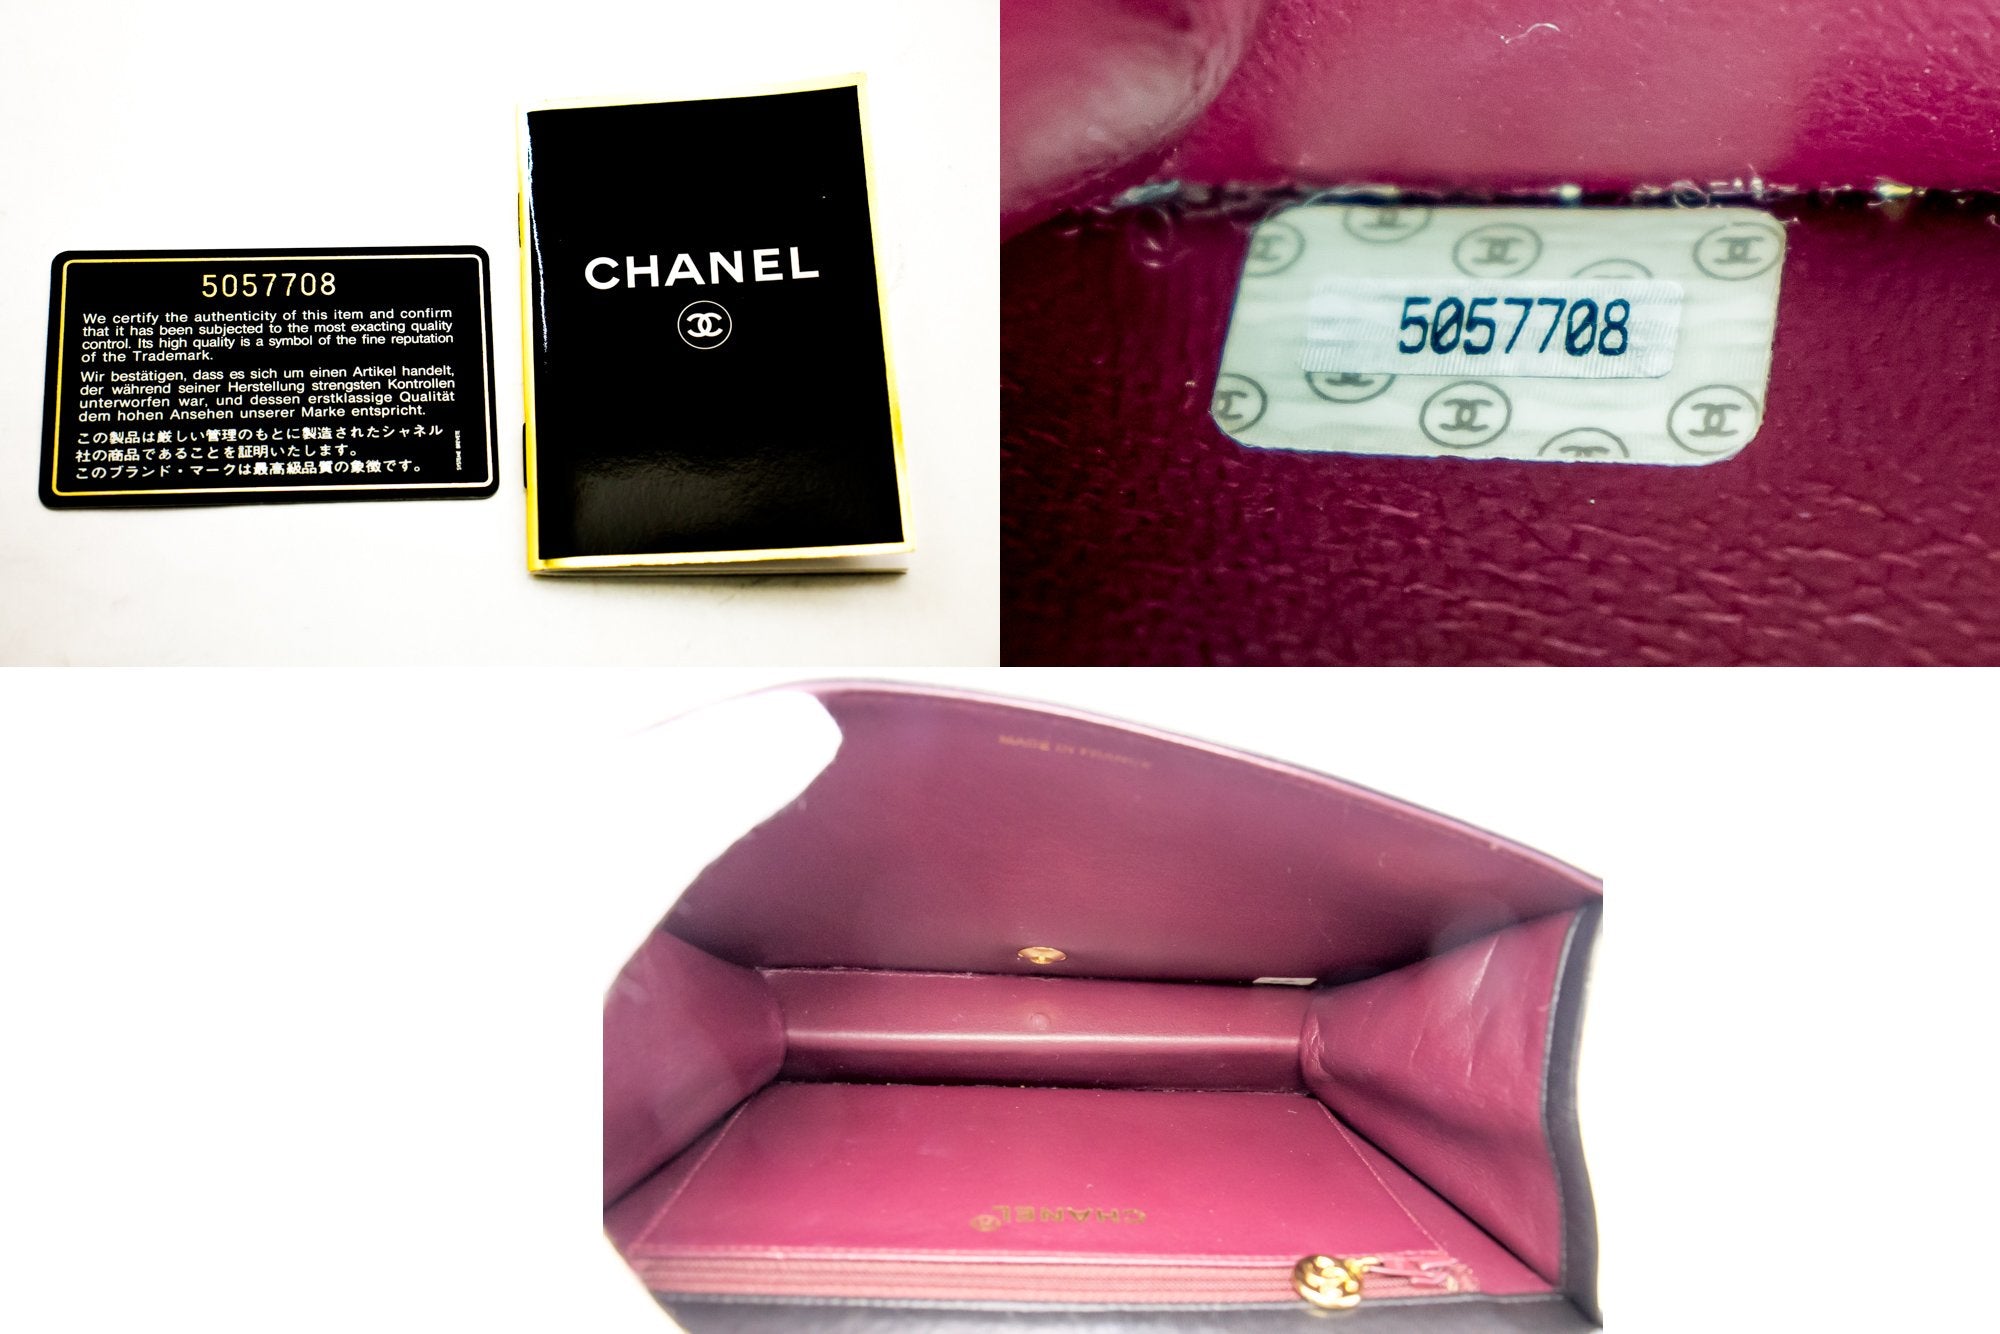 Nhờ gia đình Authentic check giúp túi Chanel có phải hàng hiệu chính hãng  không  WEBSITE HÀNG HIỆU DUY NHẤT VIỆT NAM